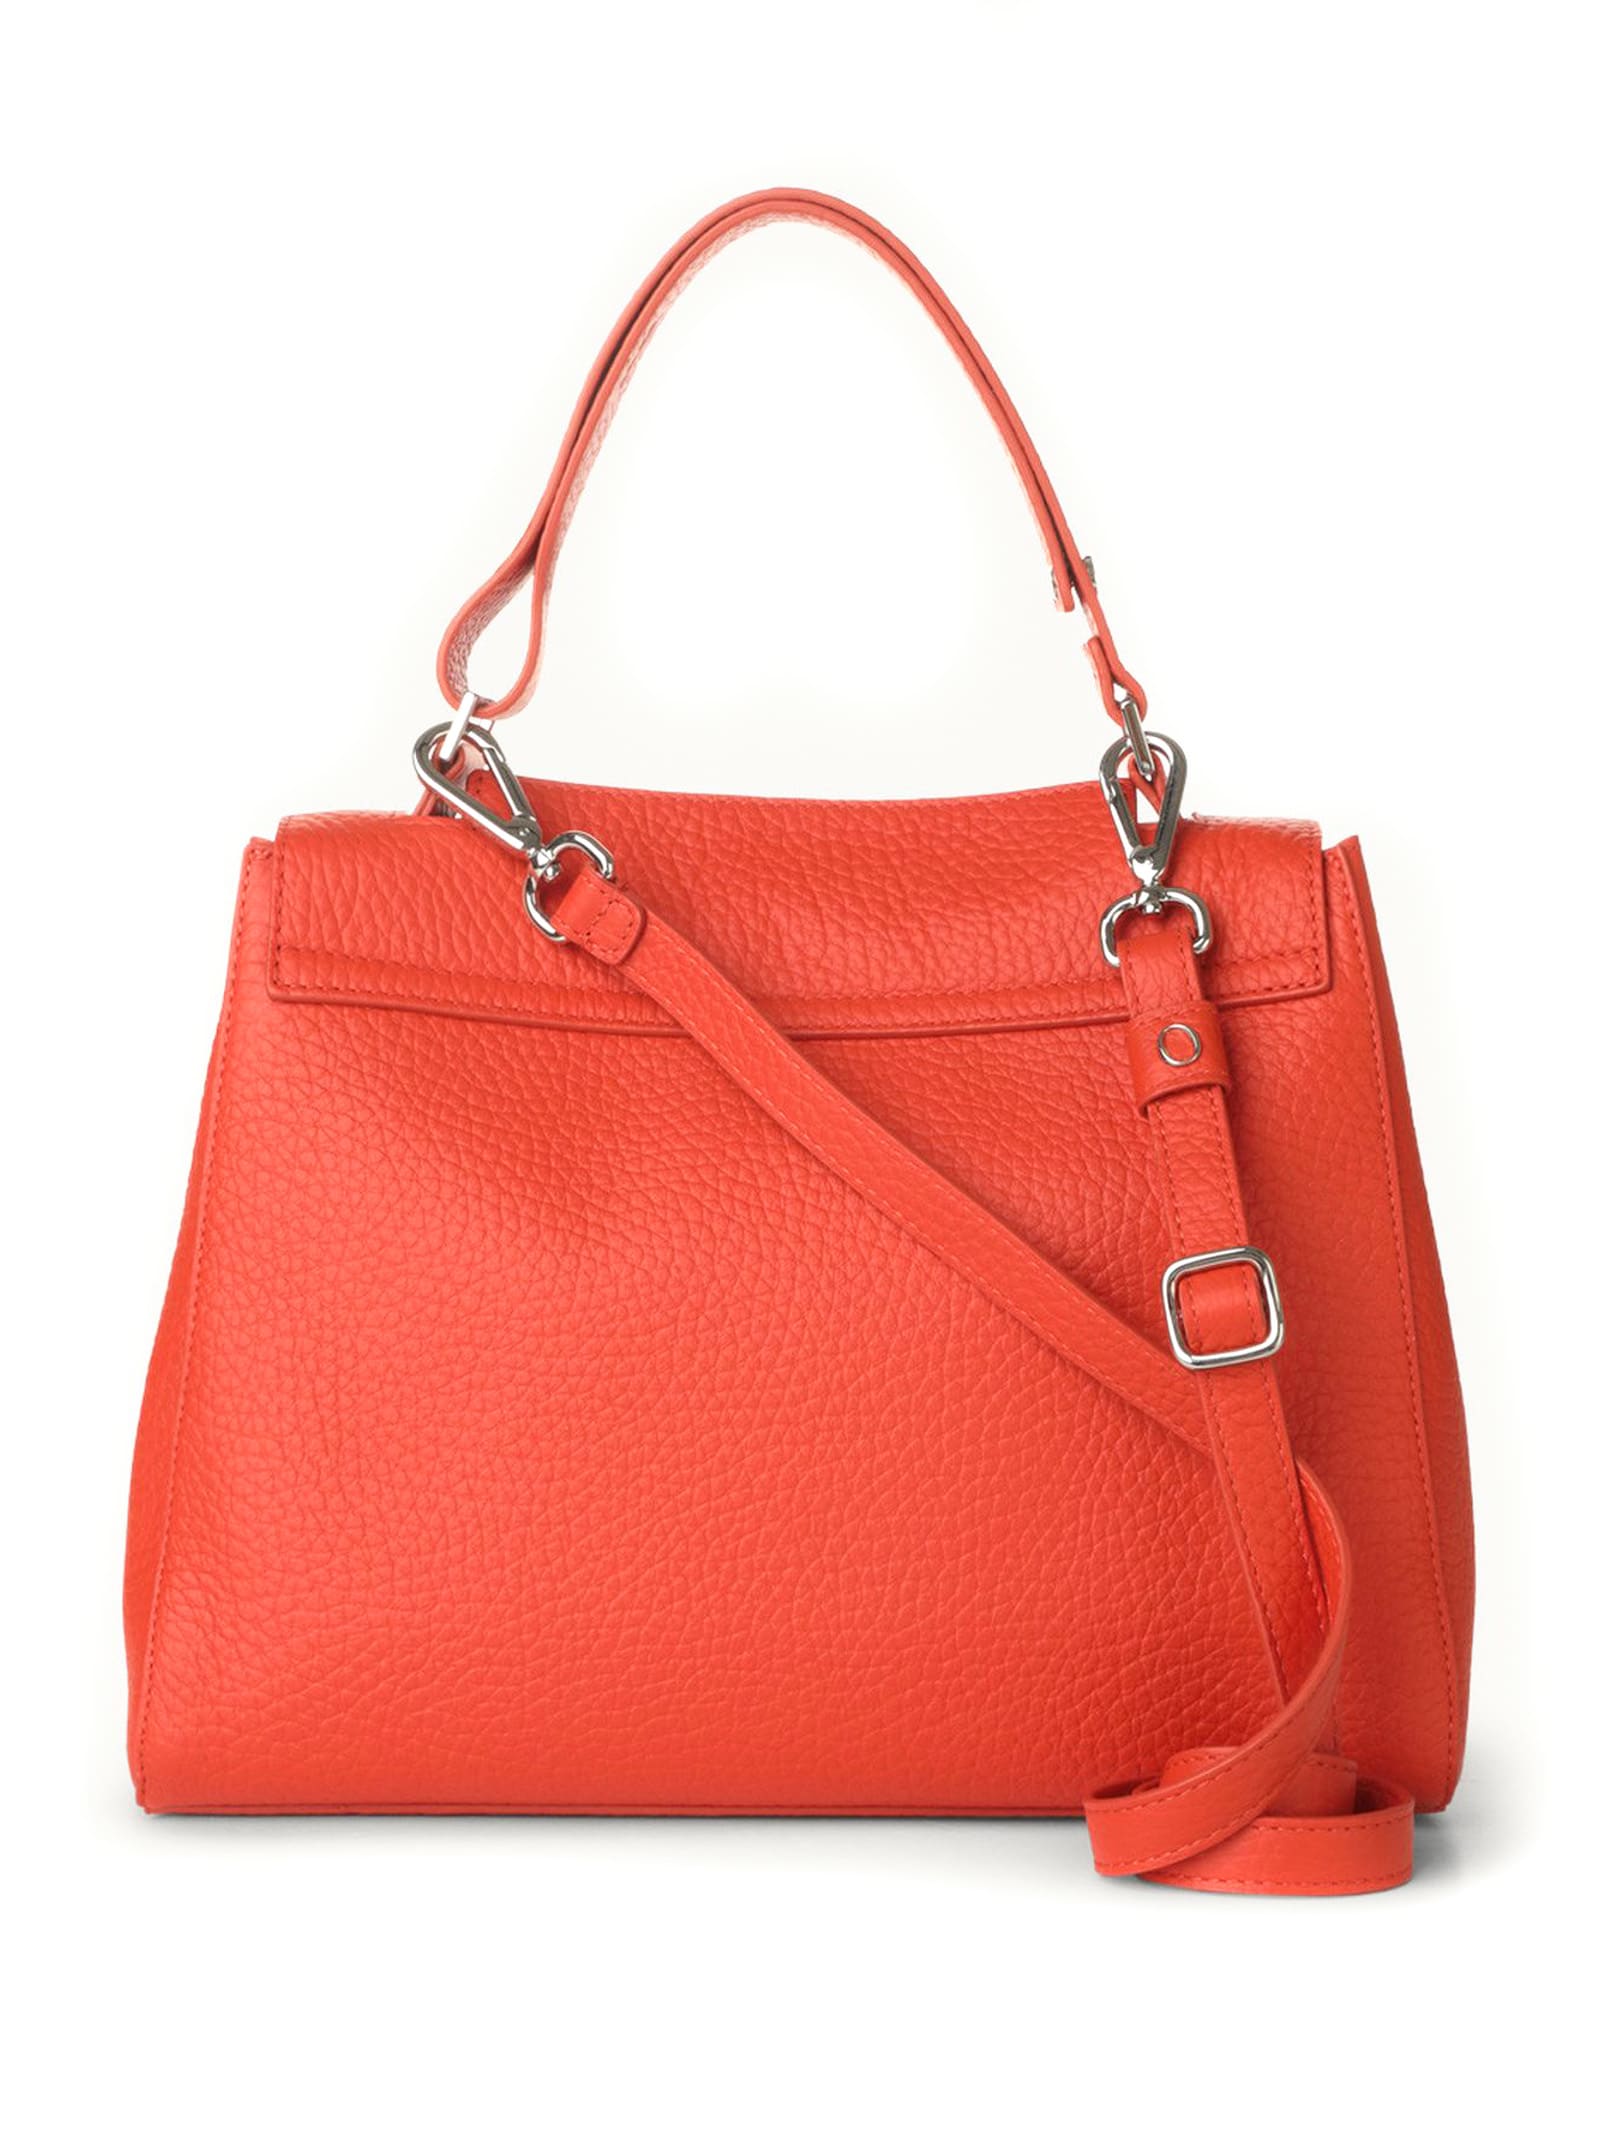 Shop Orciani Sveva Soft Medium Leather Shoulder Bag In Orange